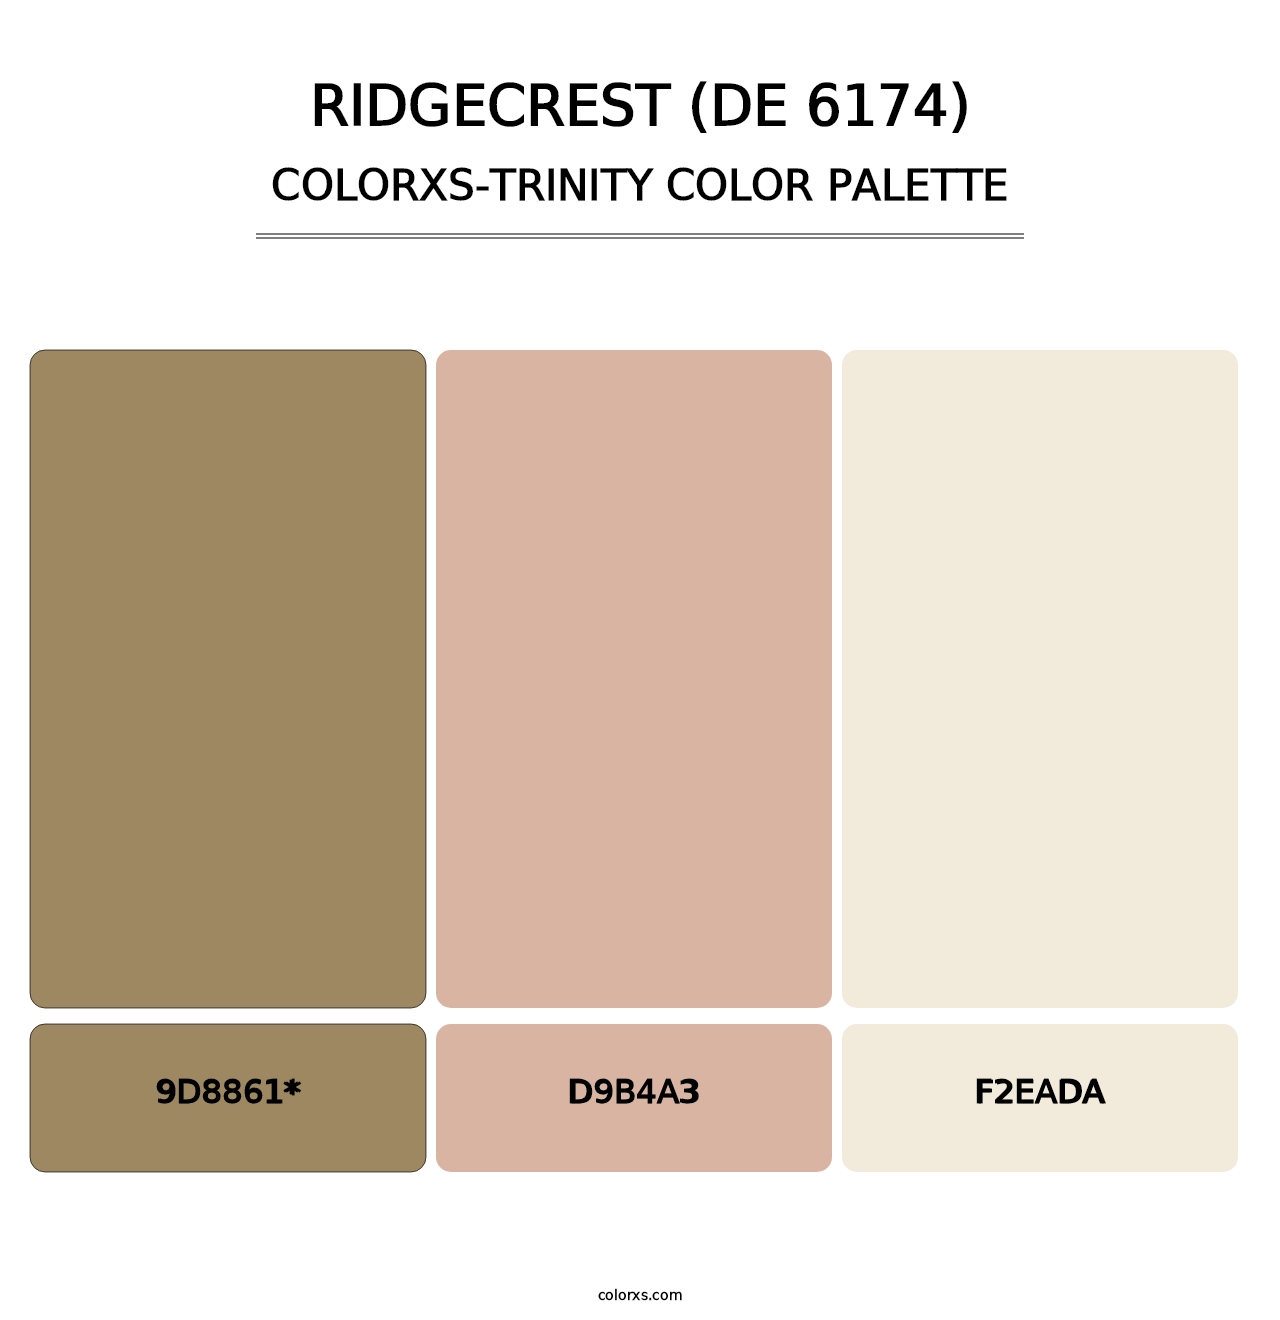 Ridgecrest (DE 6174) - Colorxs Trinity Palette